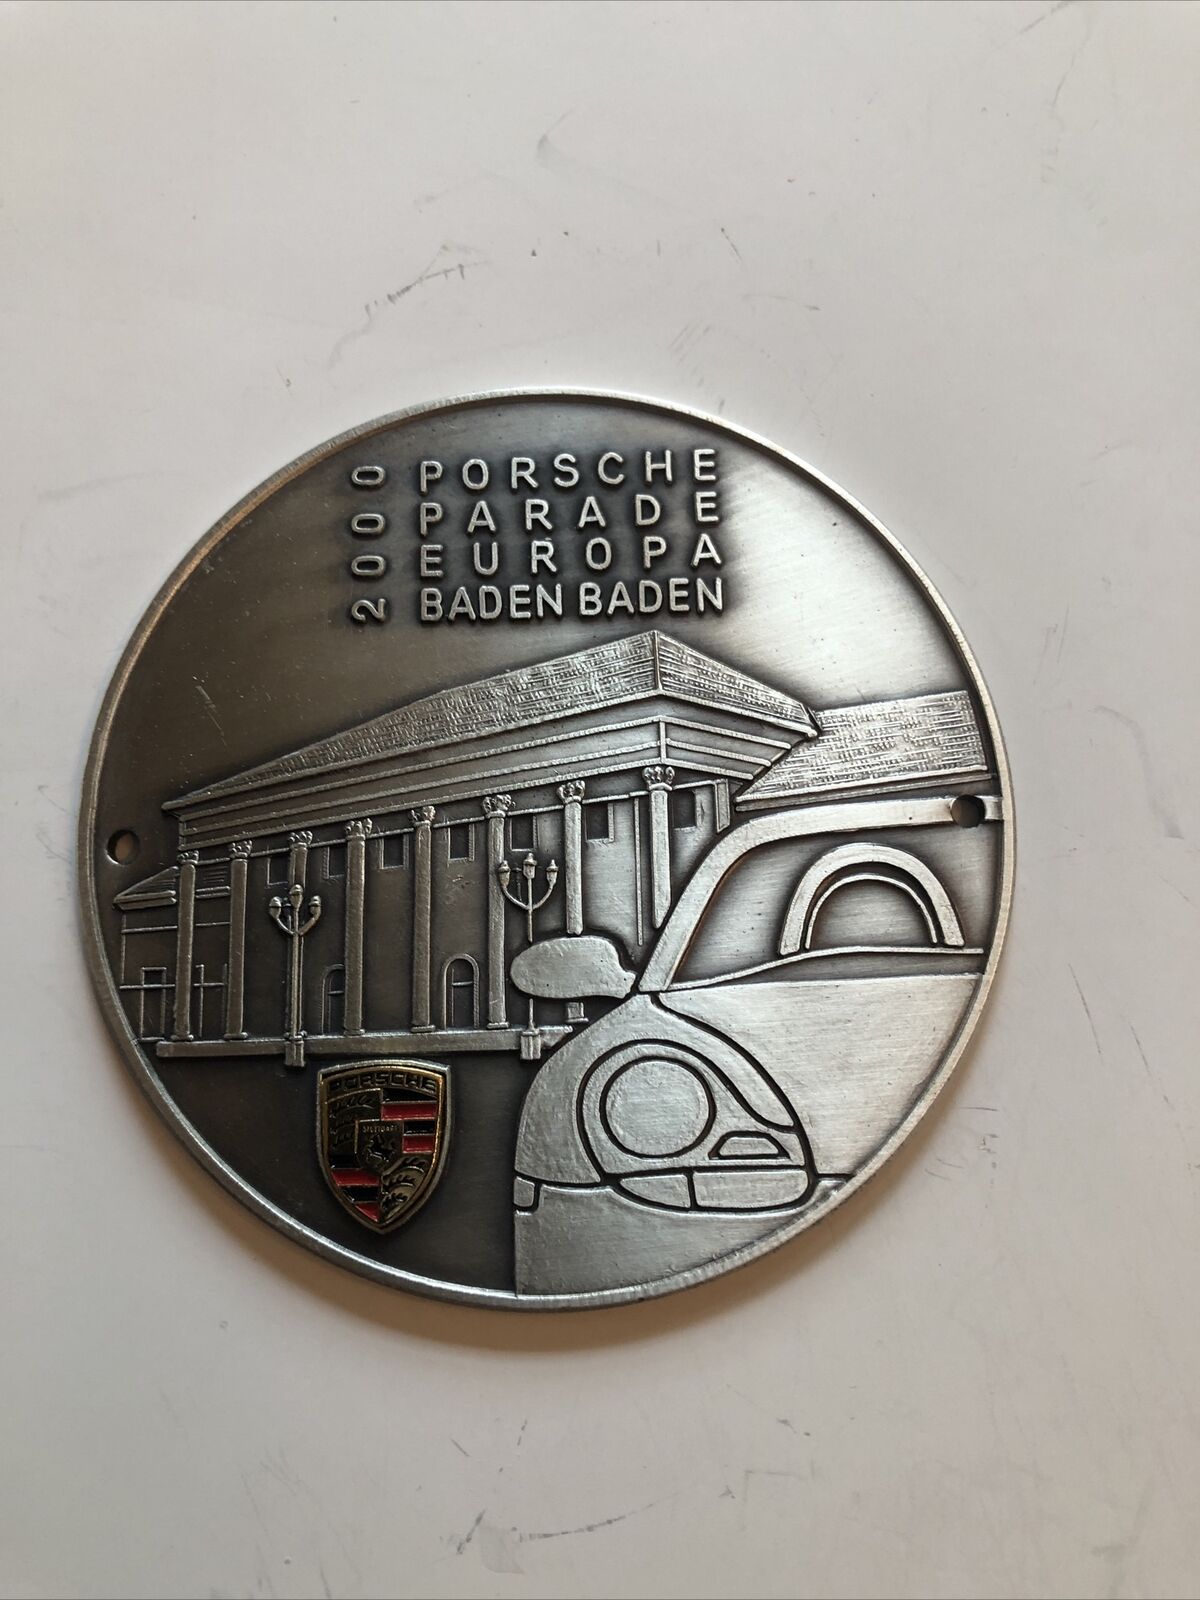 Porsche grill badge Europa Baden Baden 2000￼